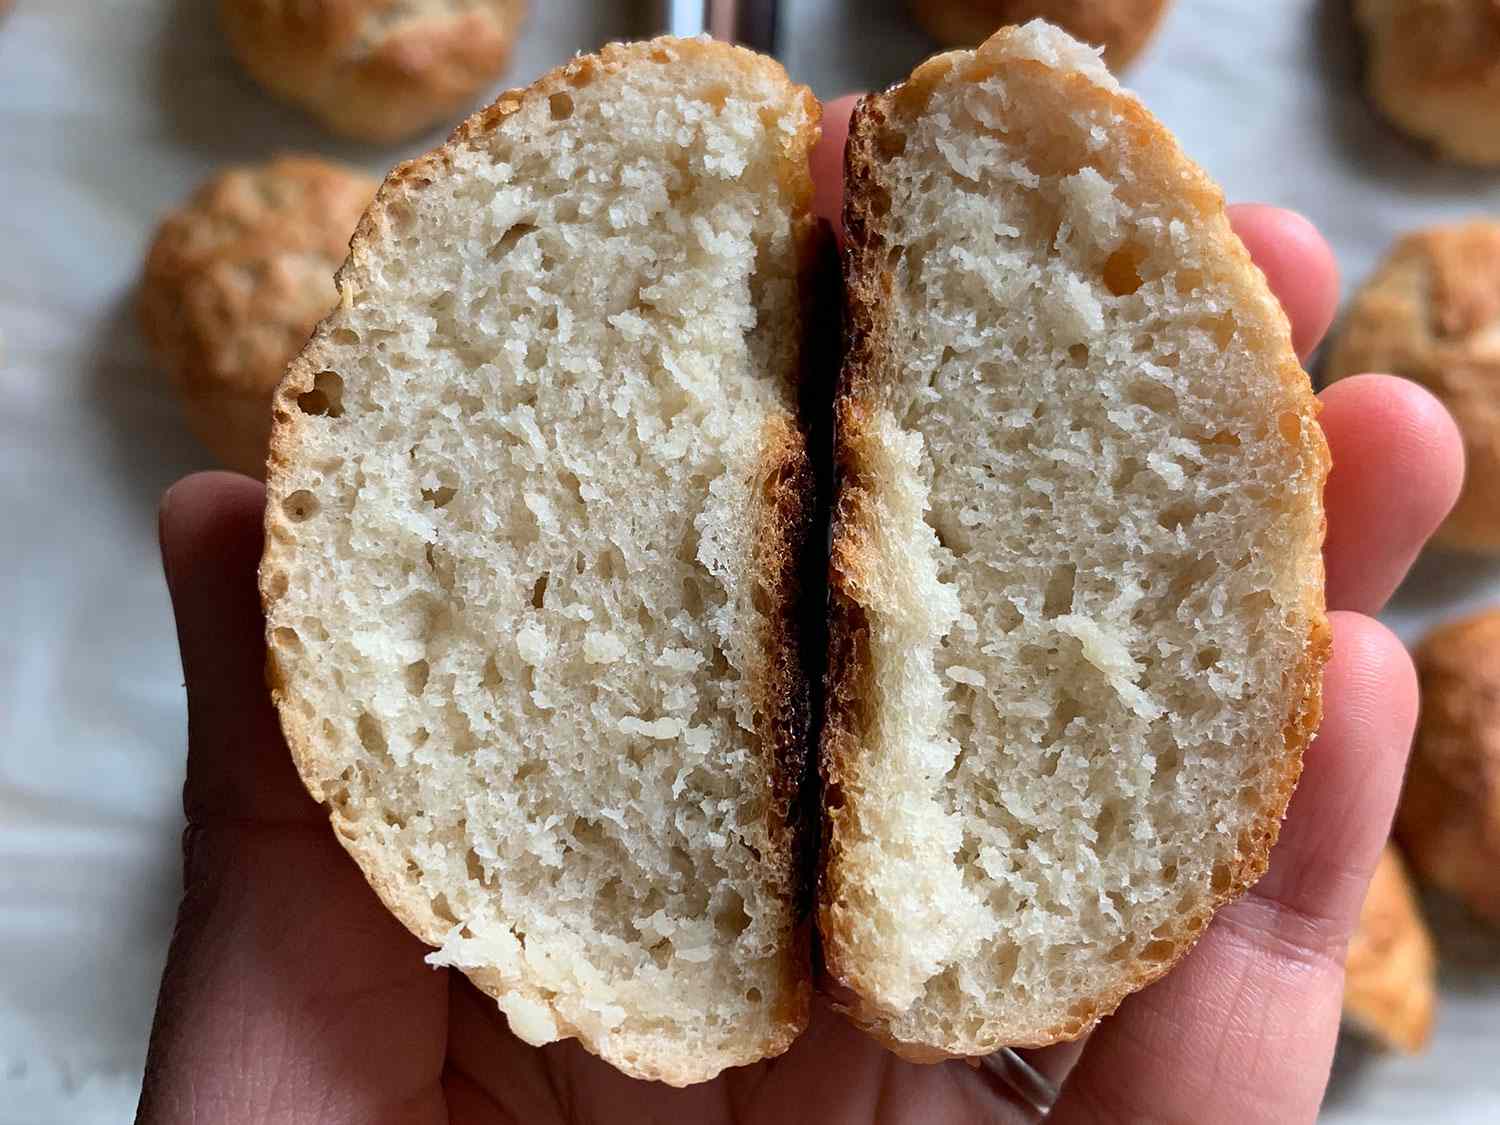 仅使用ap面粉和ap面粉+活性小麦面筋烘焙的面包卷内部比较:添加活性小麦面筋的面包卷在烘焙过程中膨胀得稍微大一些